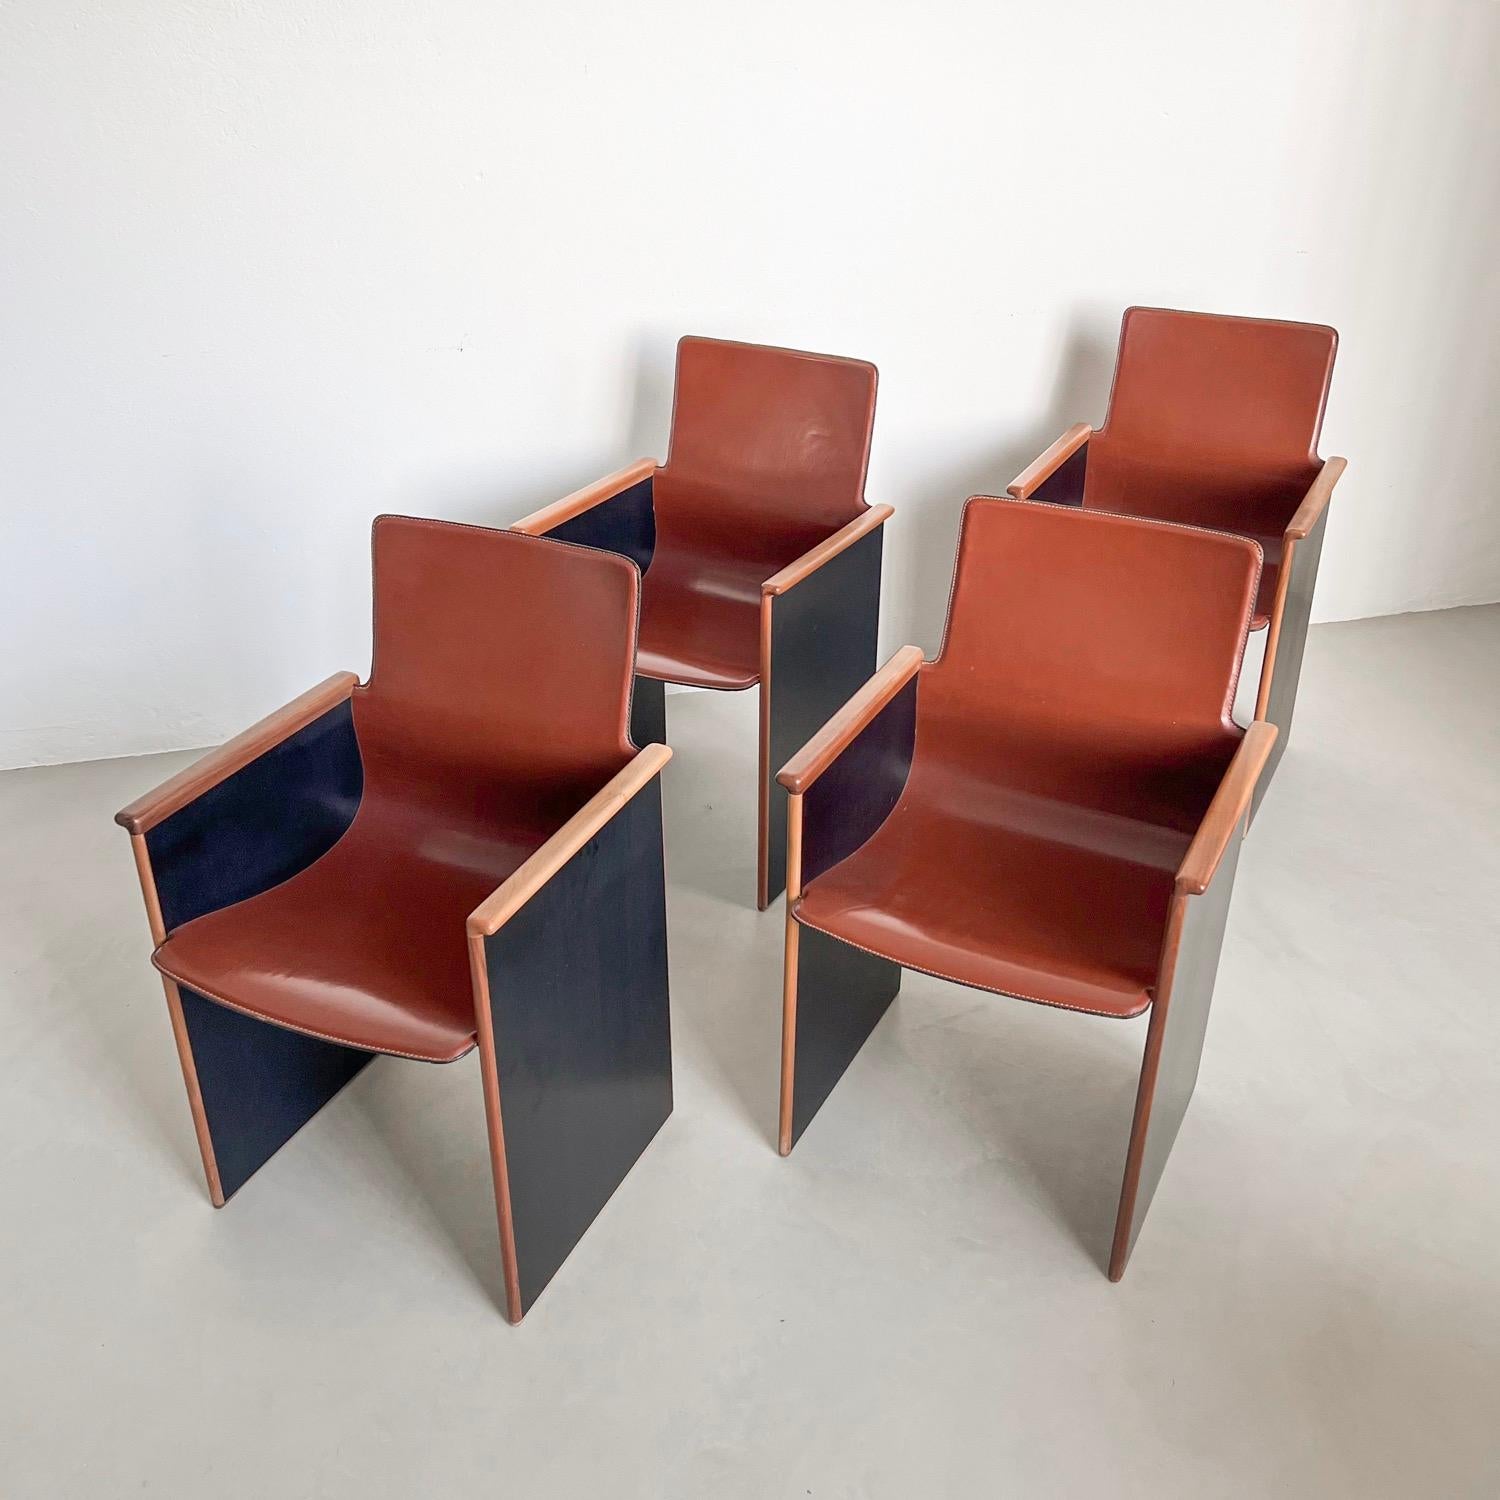 4 chaises de salle à manger sculpturales - Entryway Chais - Timeless design 

Rarissime ensemble de quatre chaises 